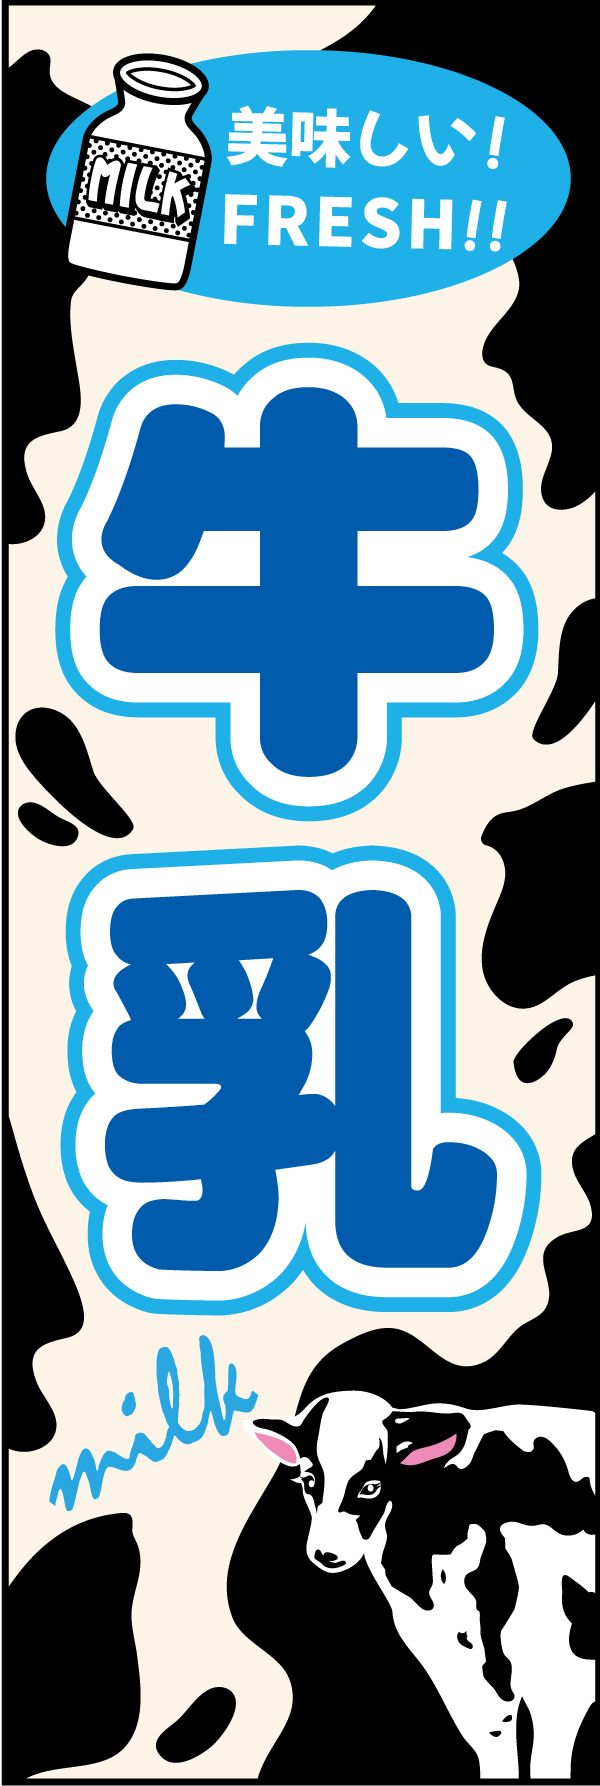 牛乳 4 牛をイメージしたモウモウ柄にイラスト使用でシンプルに目立つ「牛乳」のぼりです。文字も大きくてわかりやすいです。（M.H)